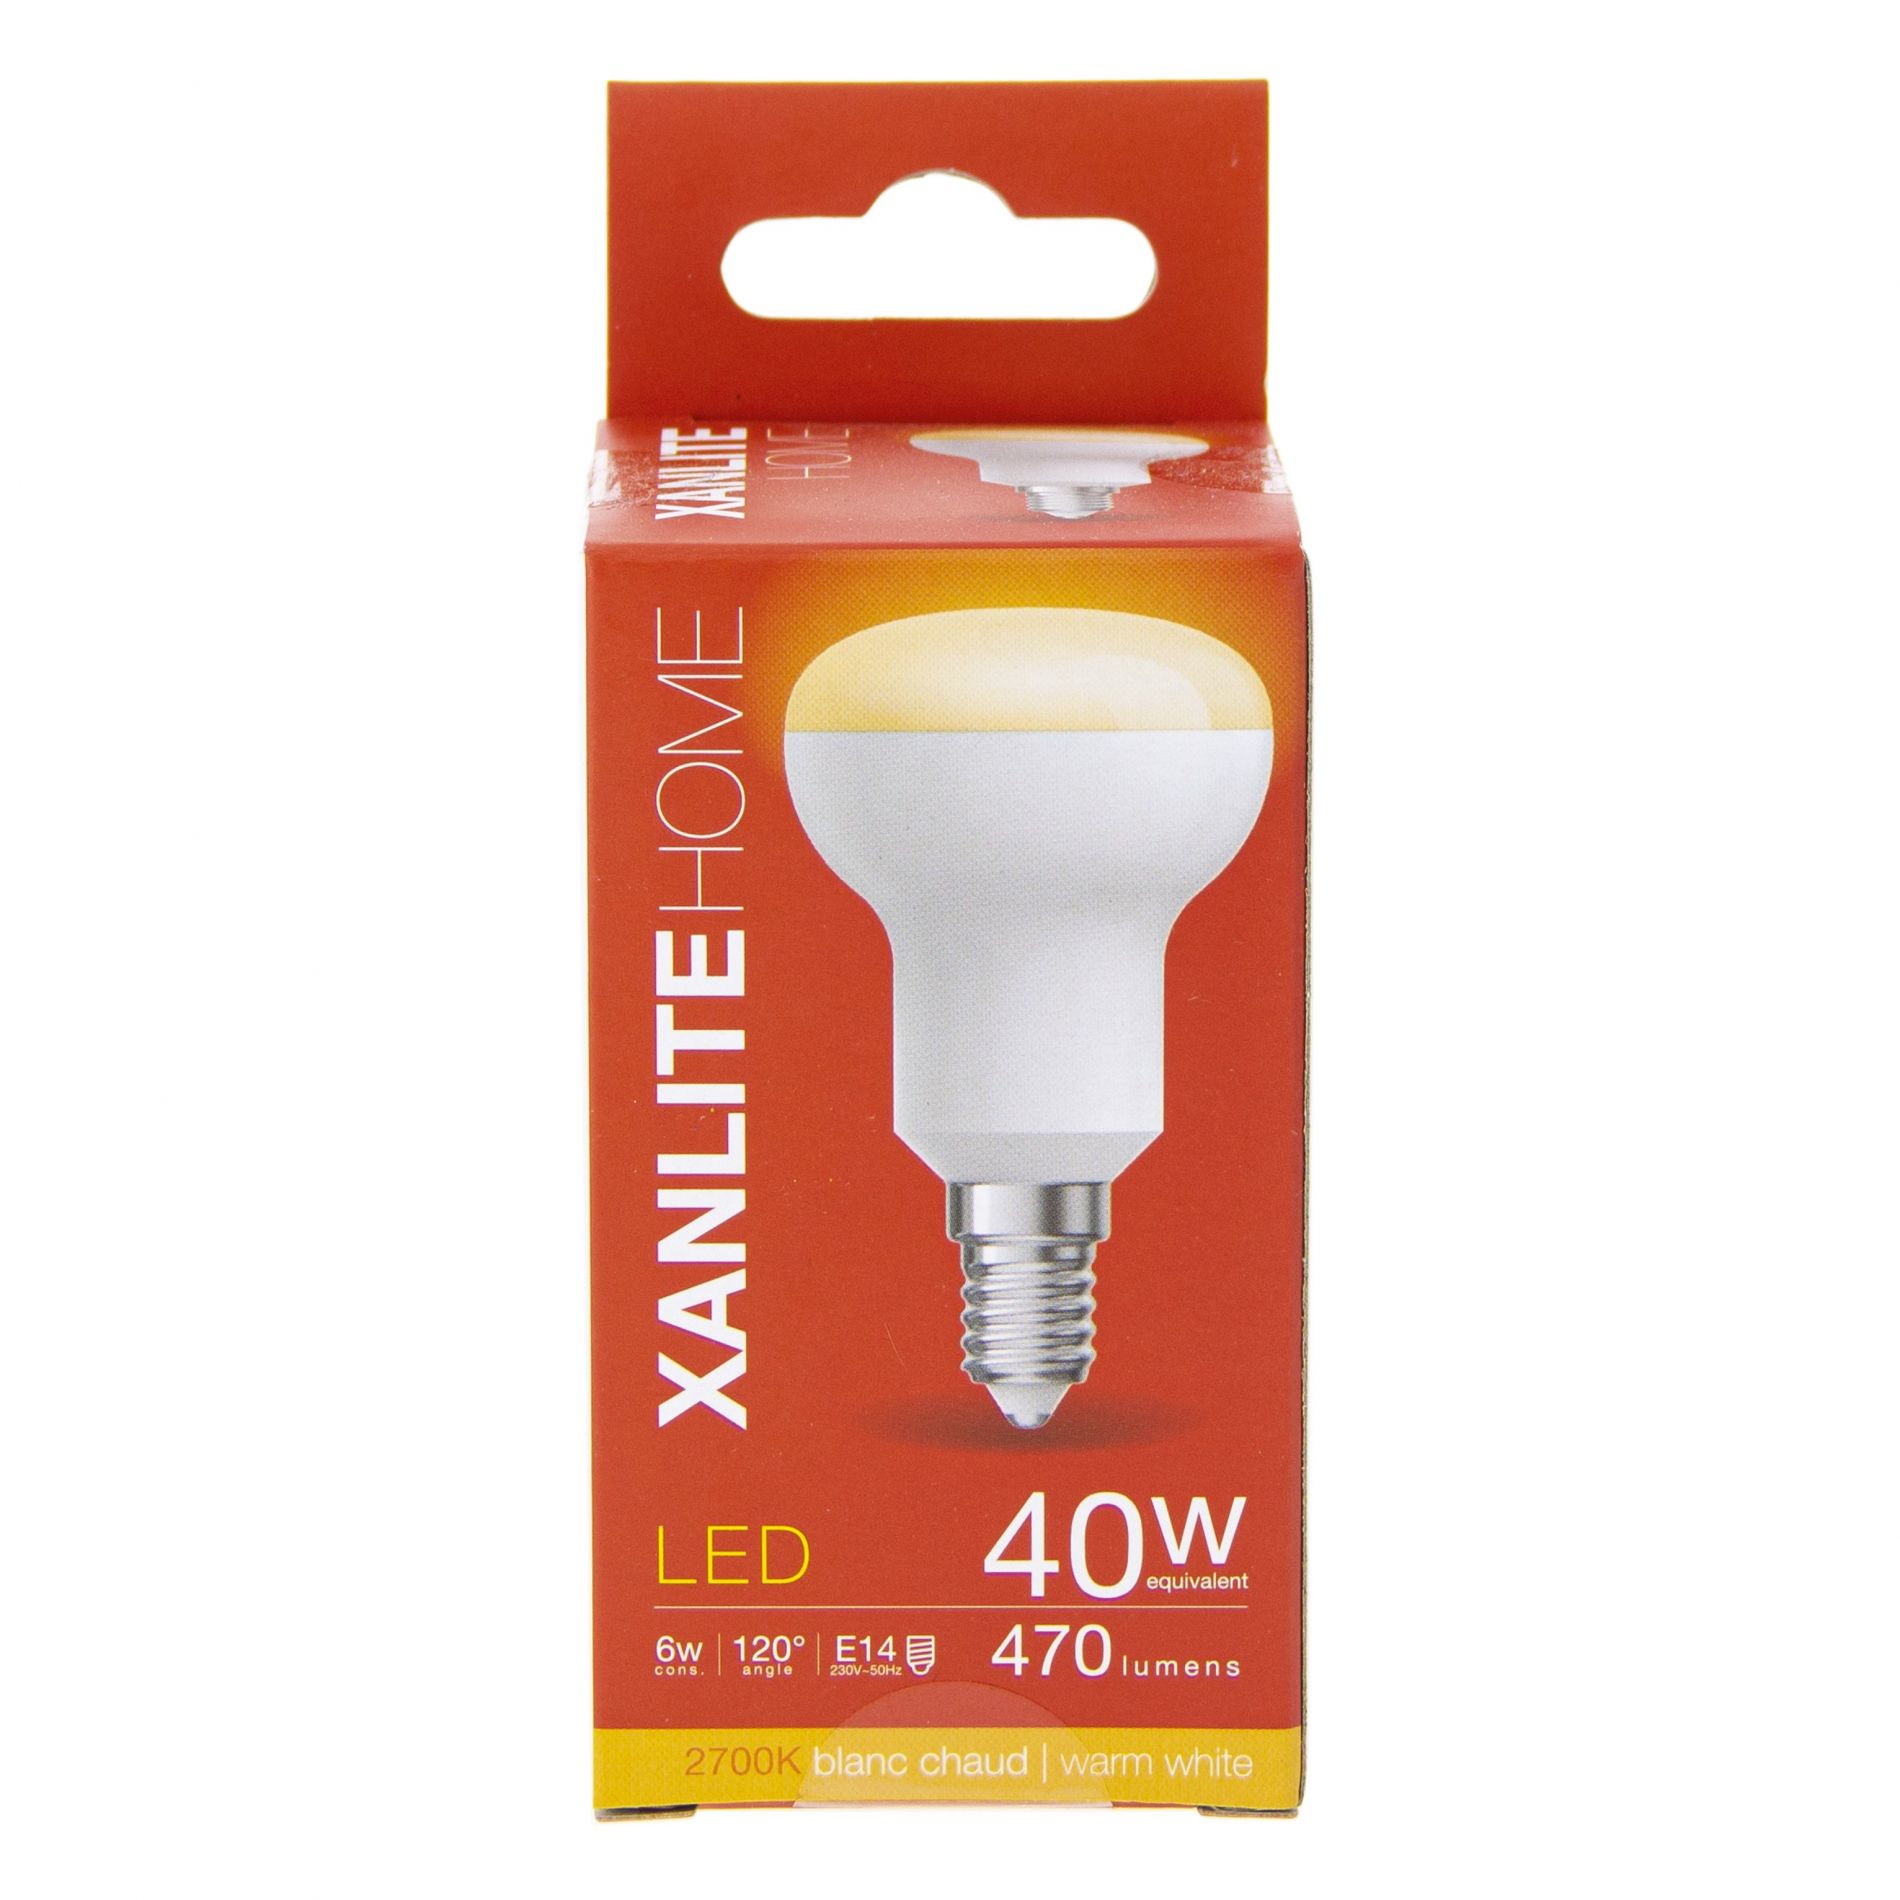 Ampoule LED E14 OPALE éclairage blanc chaud 6W 470 lumens Ø5cm